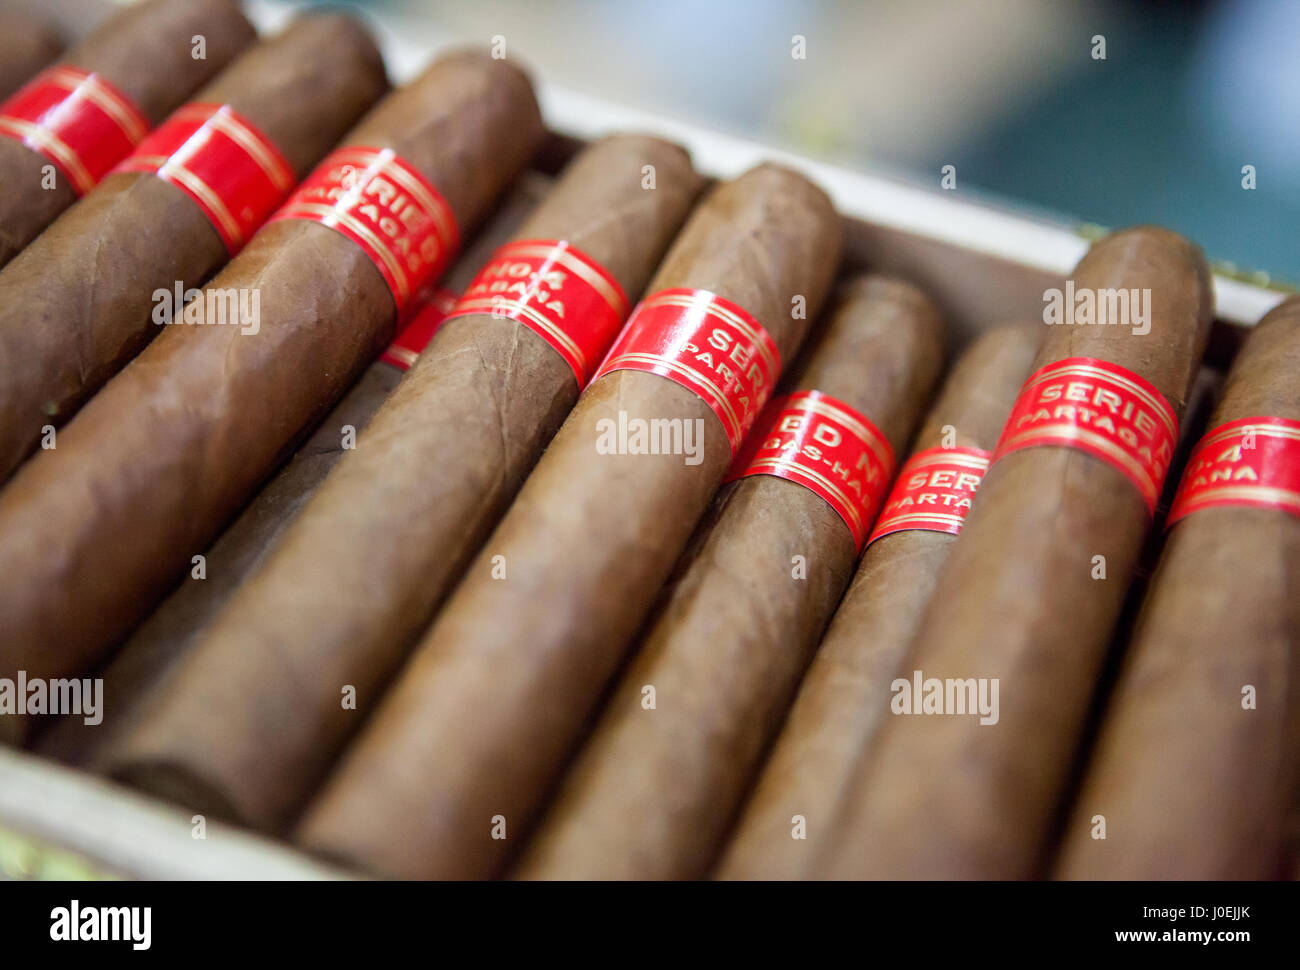 Kubanische Zigarren, Havanna, Kuba Stockfotografie - Alamy